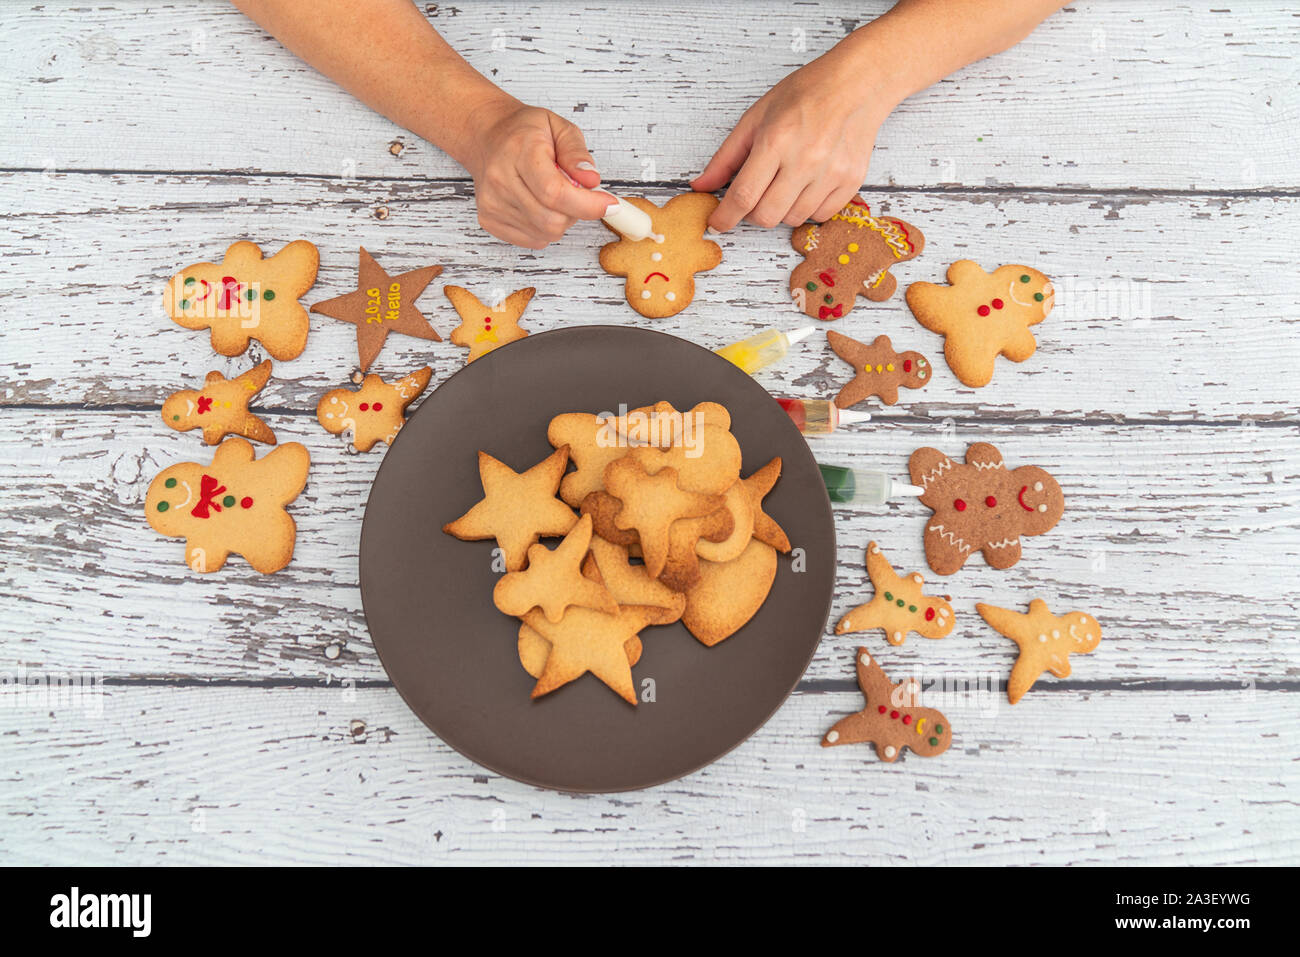 Vorbereiten von traditionellen Lebkuchen cookies für das neue Jahr feiern. Stockfoto